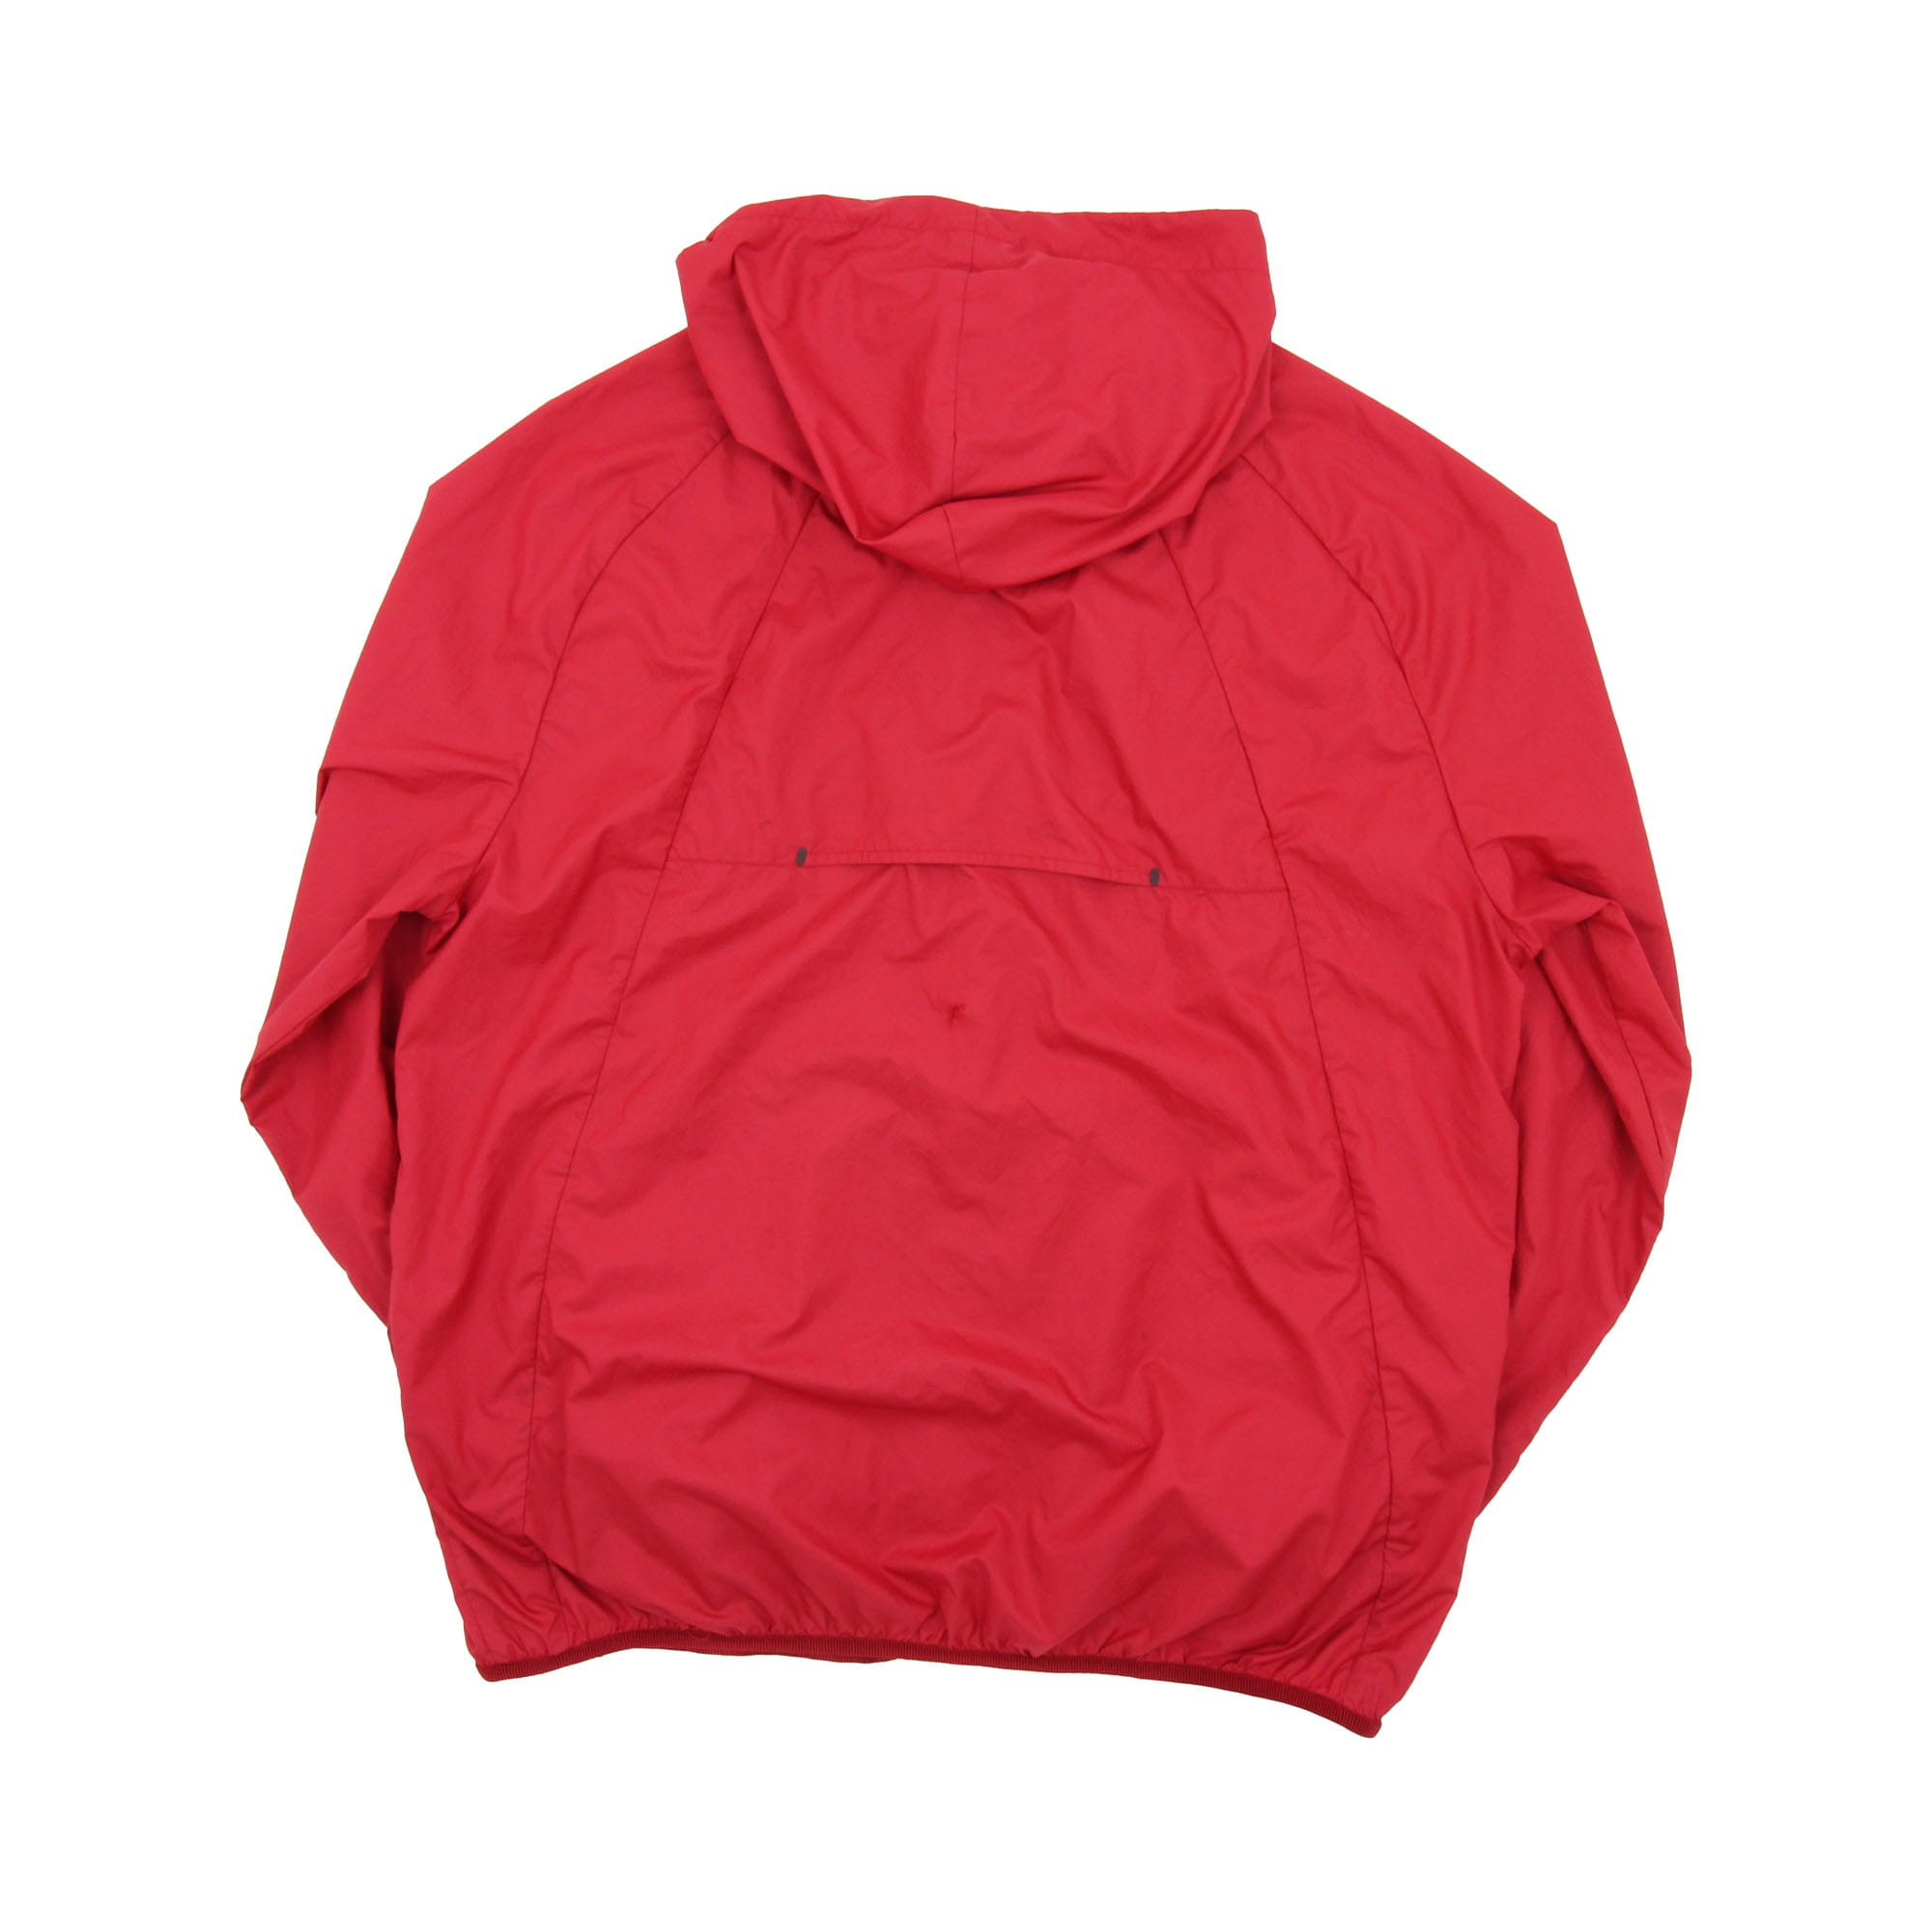 Jordan Thin Jacket Red -  L